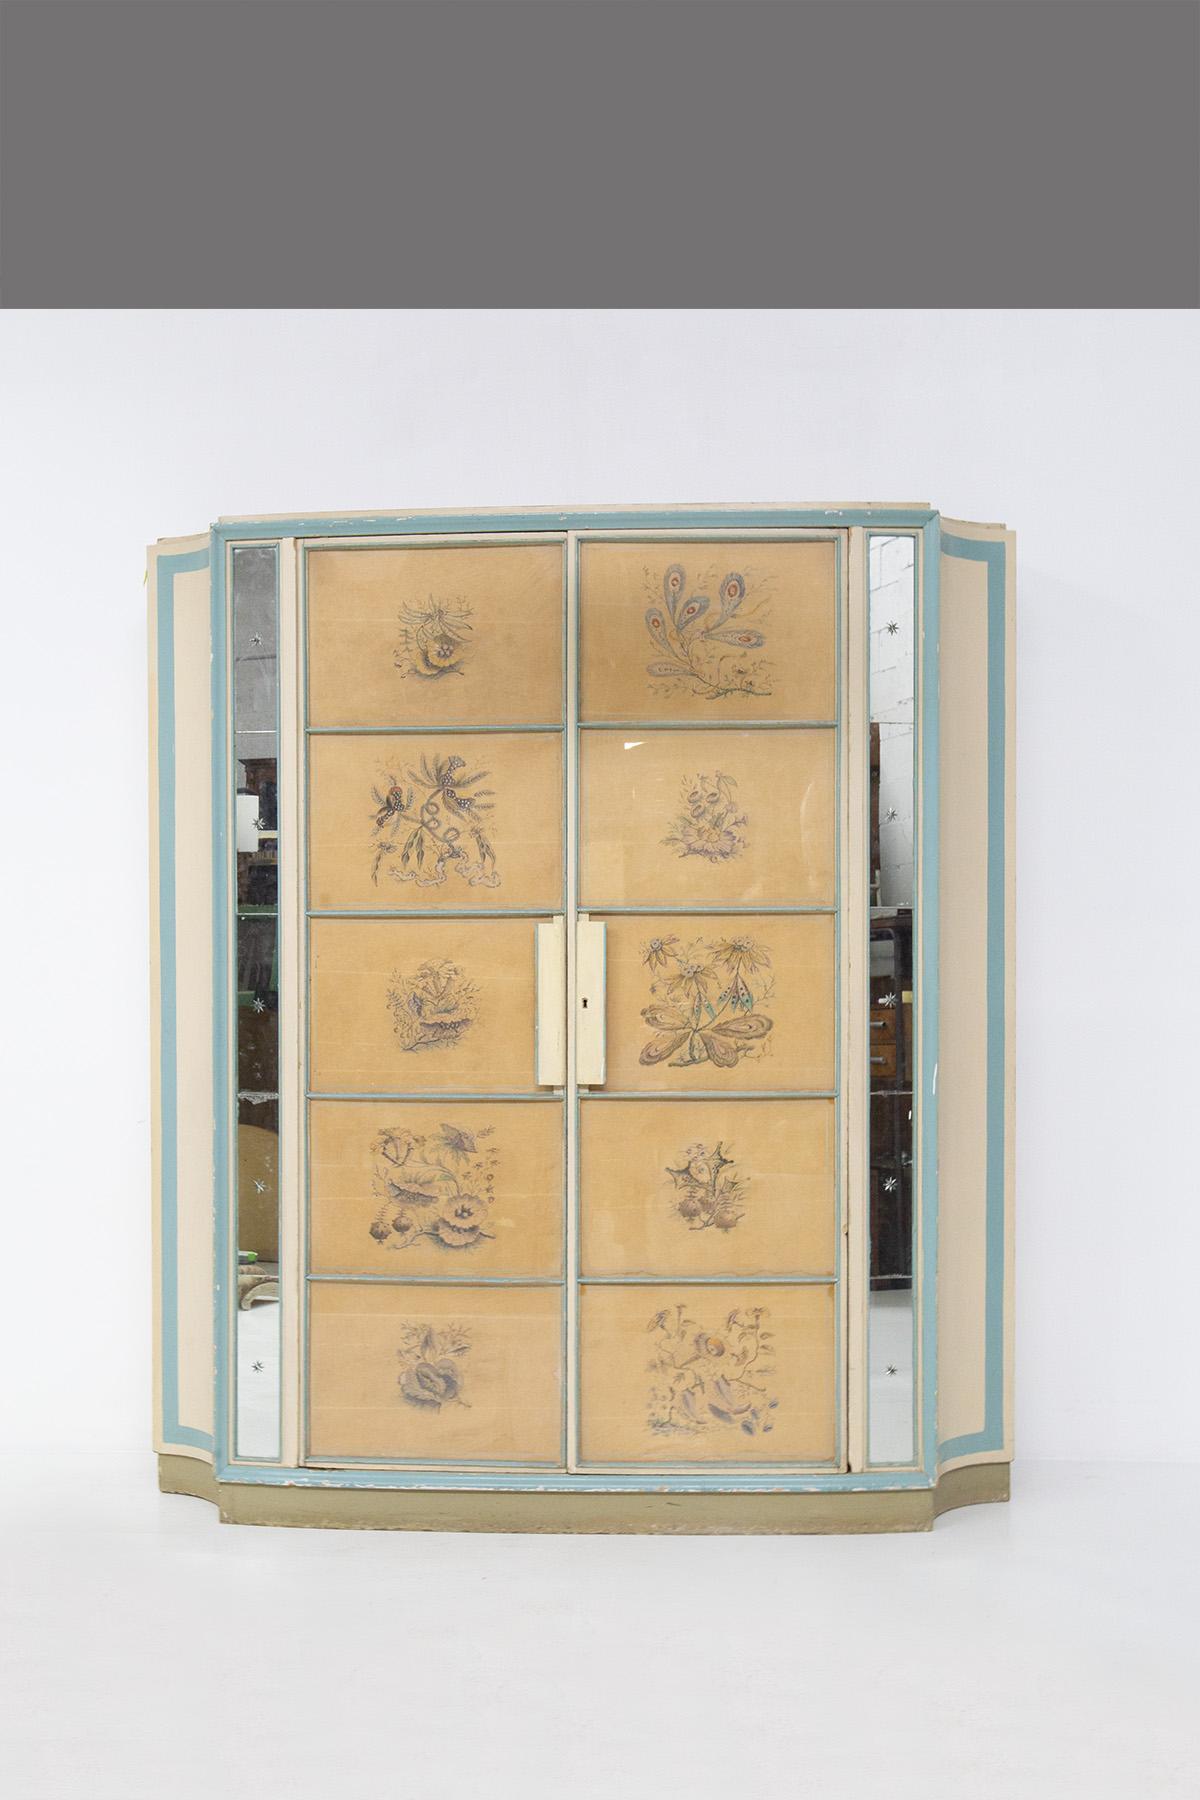 Importante armoire de Paolo Buffa pour la production italienne des années 1950 d'Arrighi. L'armoire est un grand produit d'une rare beauté, c'est un meuble inestimable qui témoigne de l'excellence de l'artisanat italien de l'époque. L'armoire est